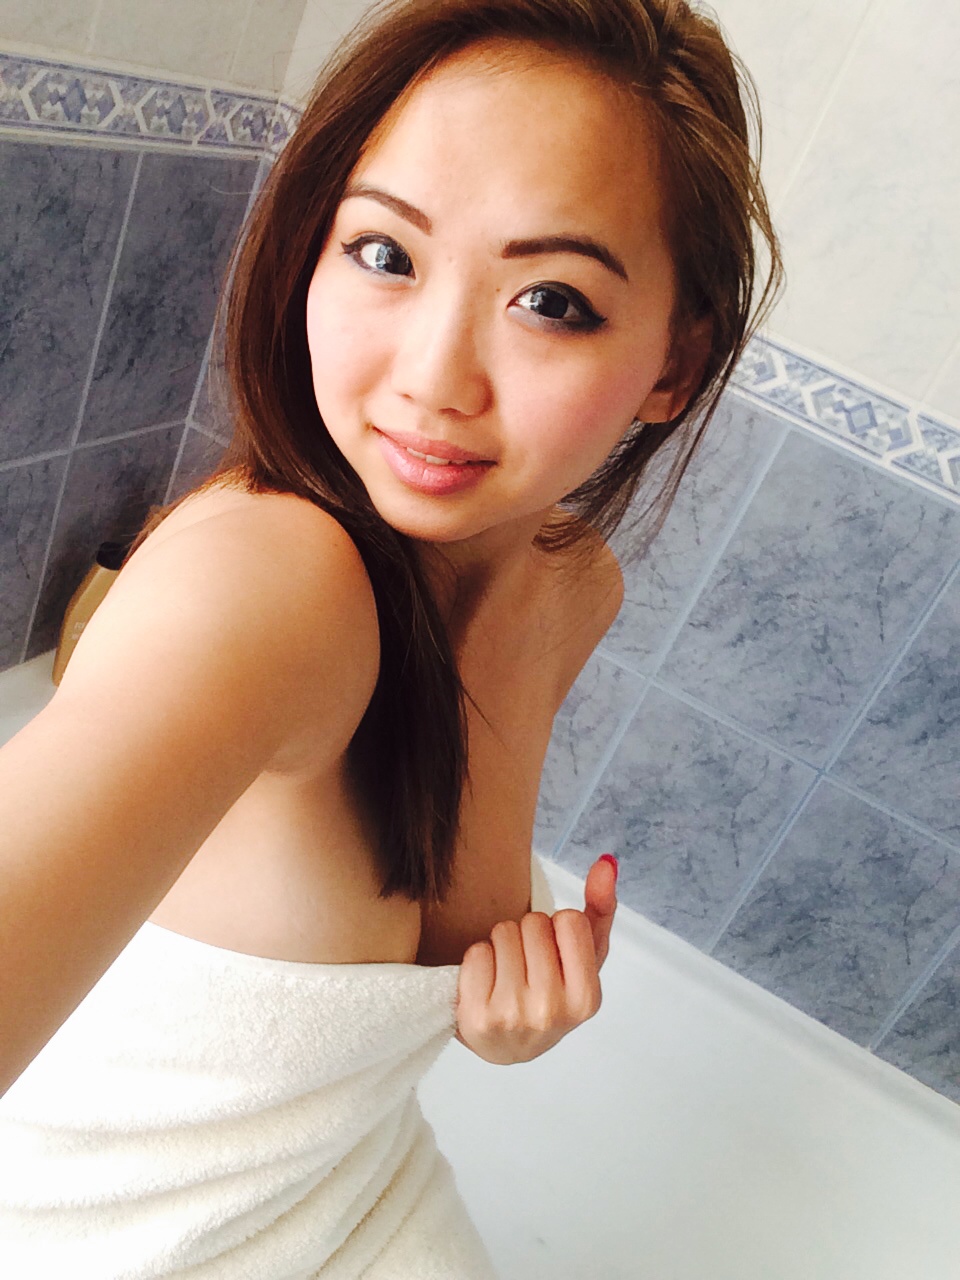 Hot Asian Girls Naked In Shower